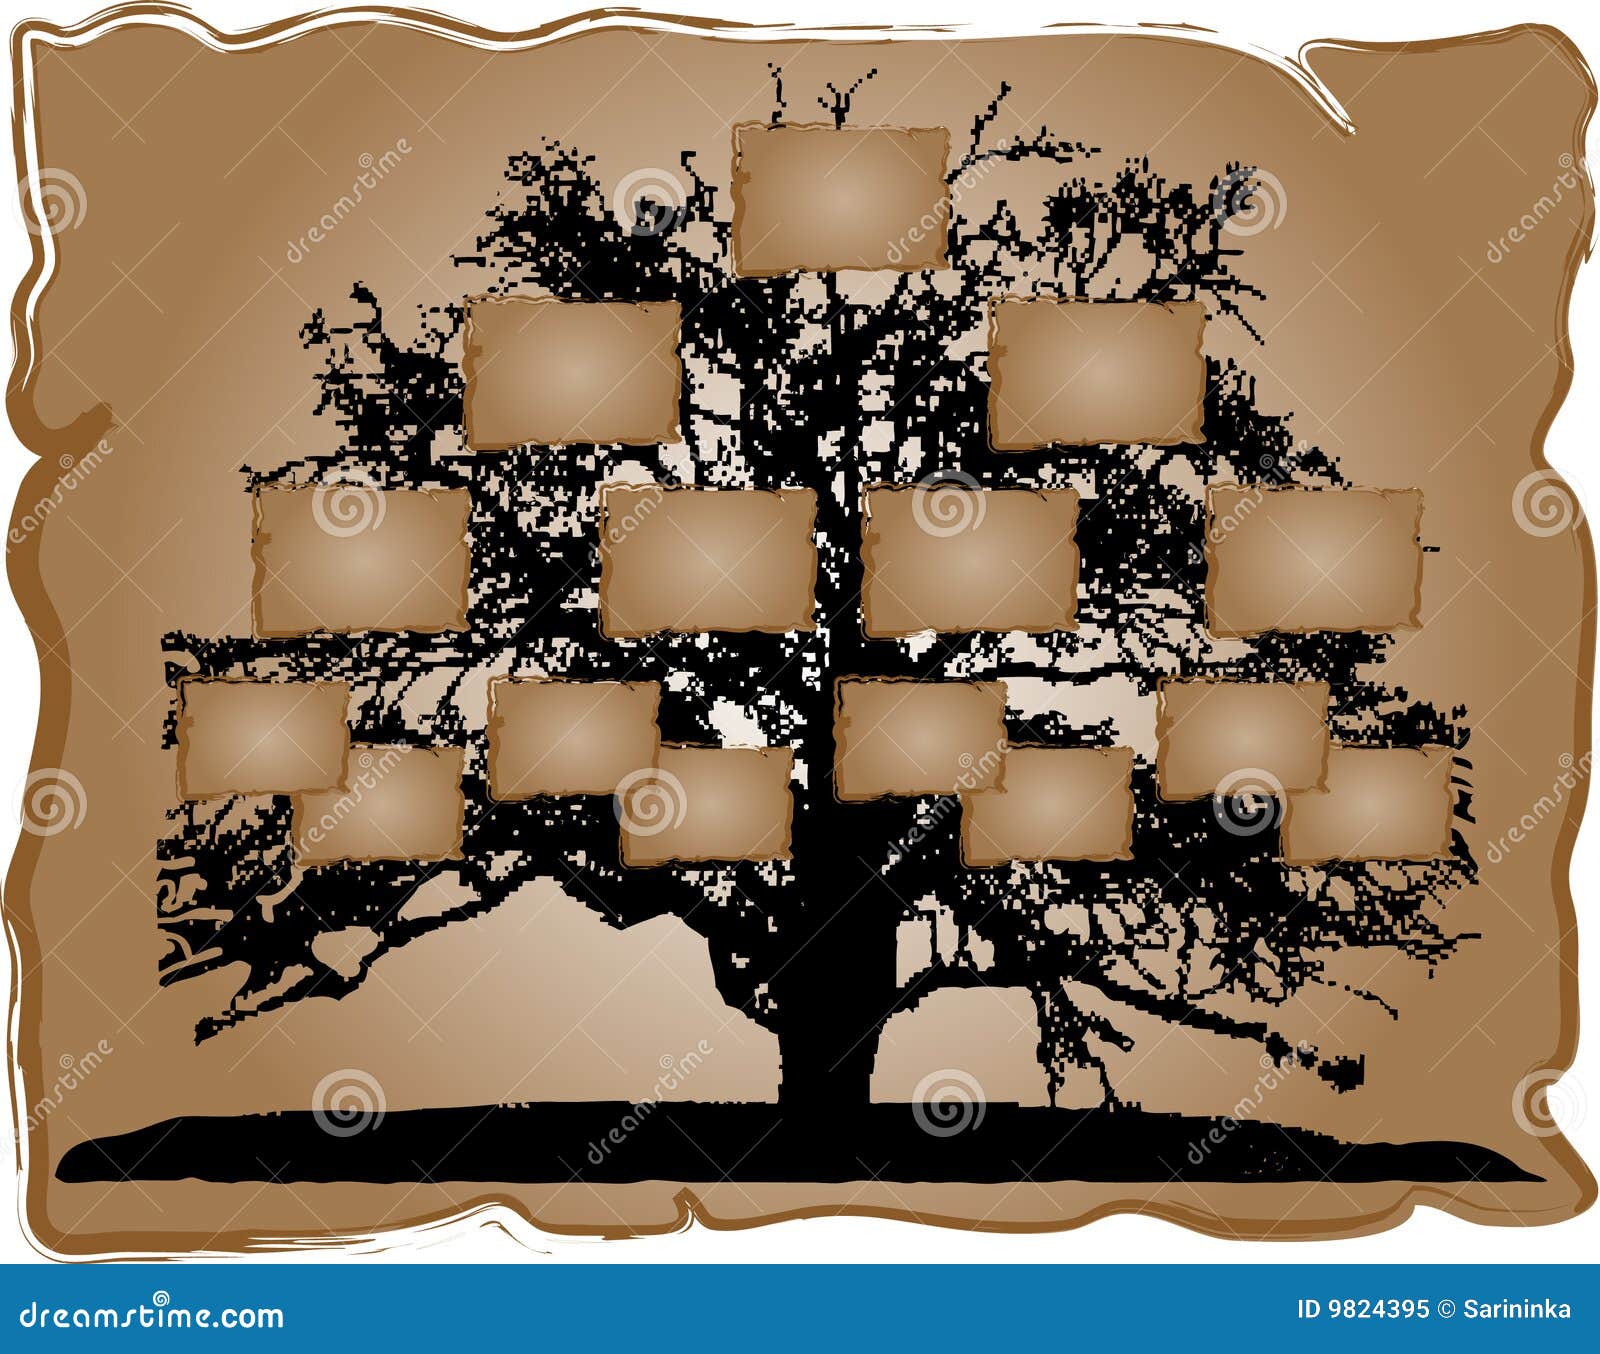 Vector Dibujado A Mano árbol Genealógico árbol Genealógico PNG ,dibujos  Clipart De árbol, árbol De Genealogía, Verde PNG y Vector para Descargar  Gratis